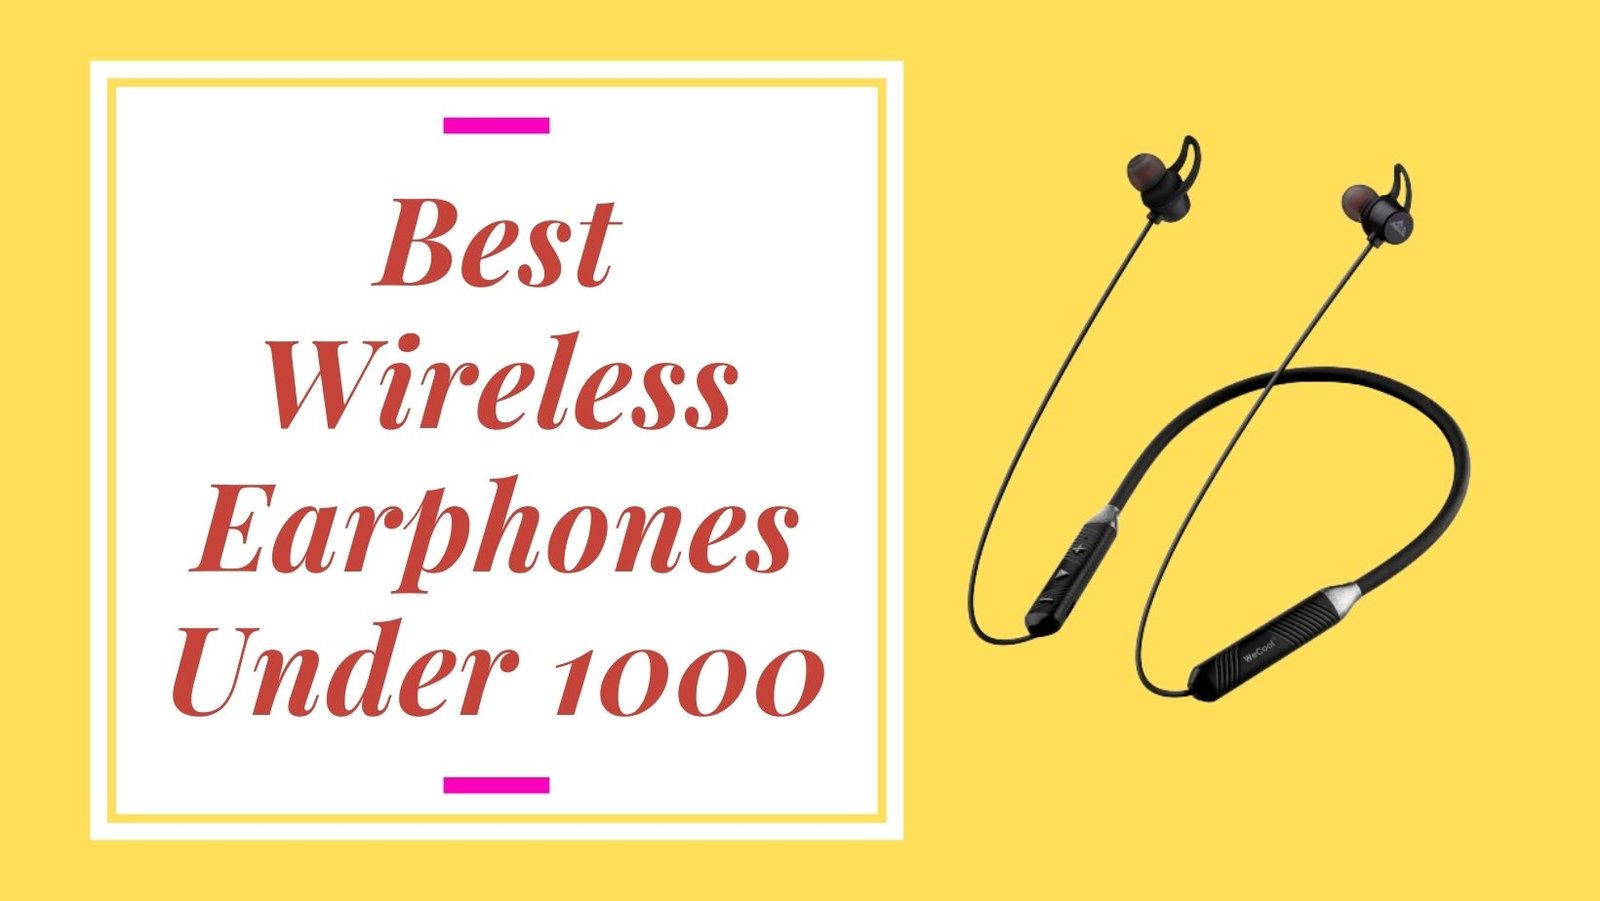 Best Wireless Earphones under 1000